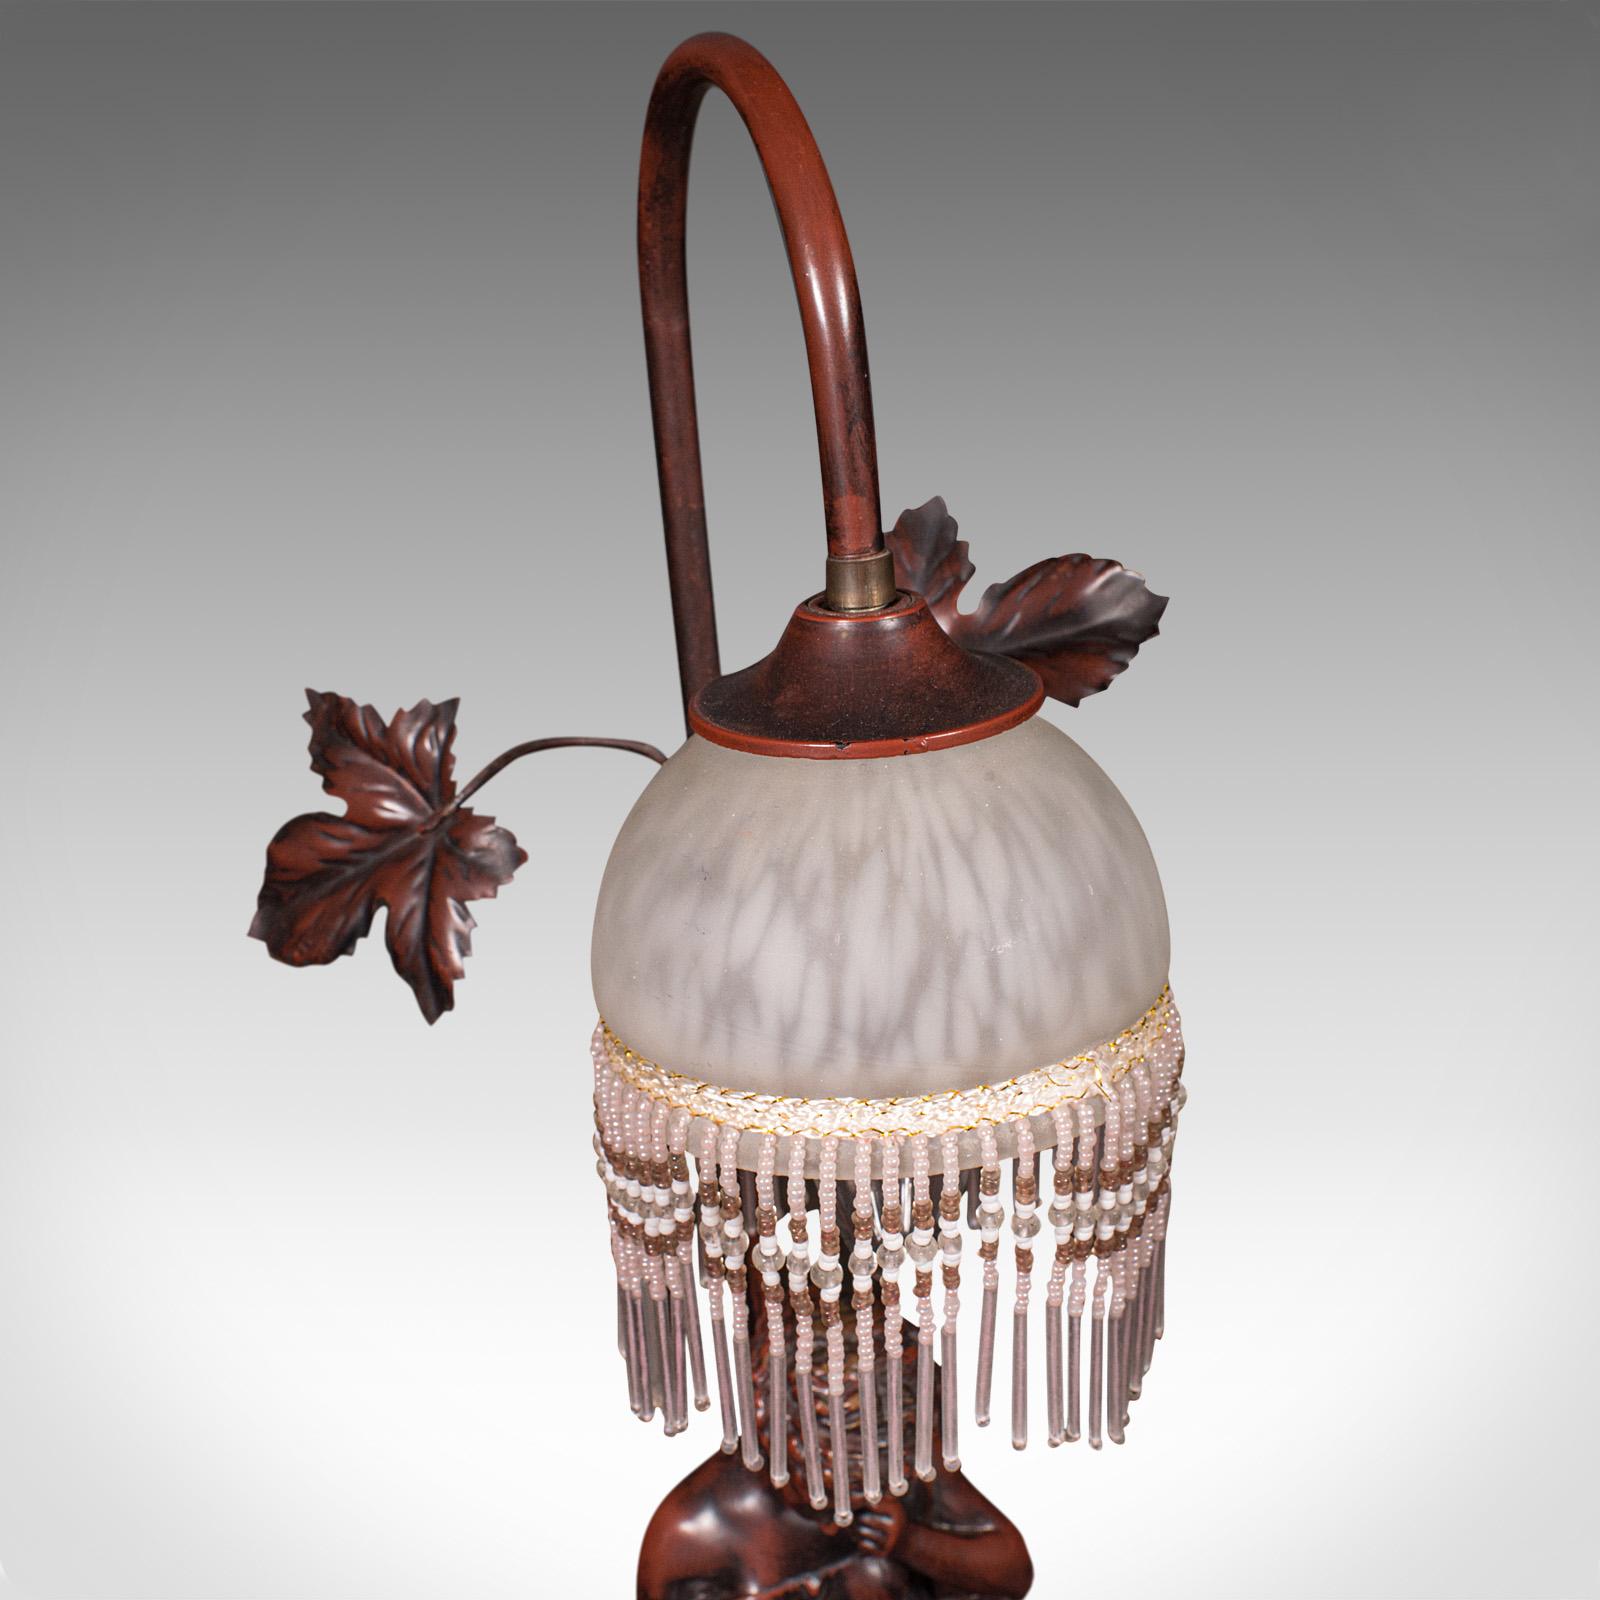 Vintage Decorative Lamp, French, Bronzed, Figural Light, Art Nouveau Revival For Sale 1